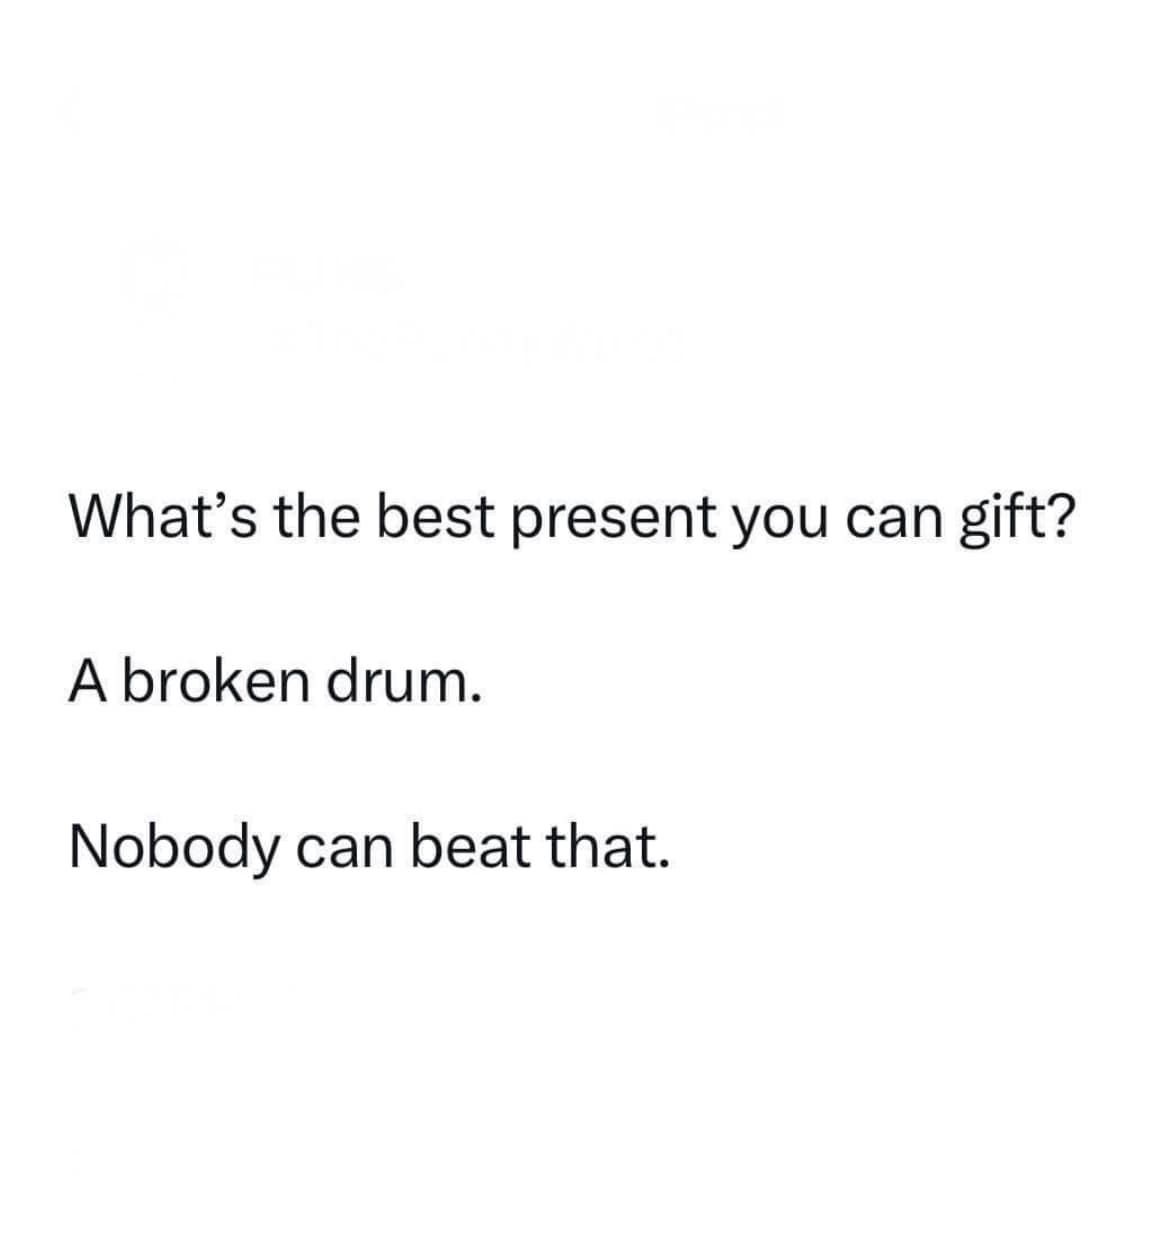 broken drum.jpg